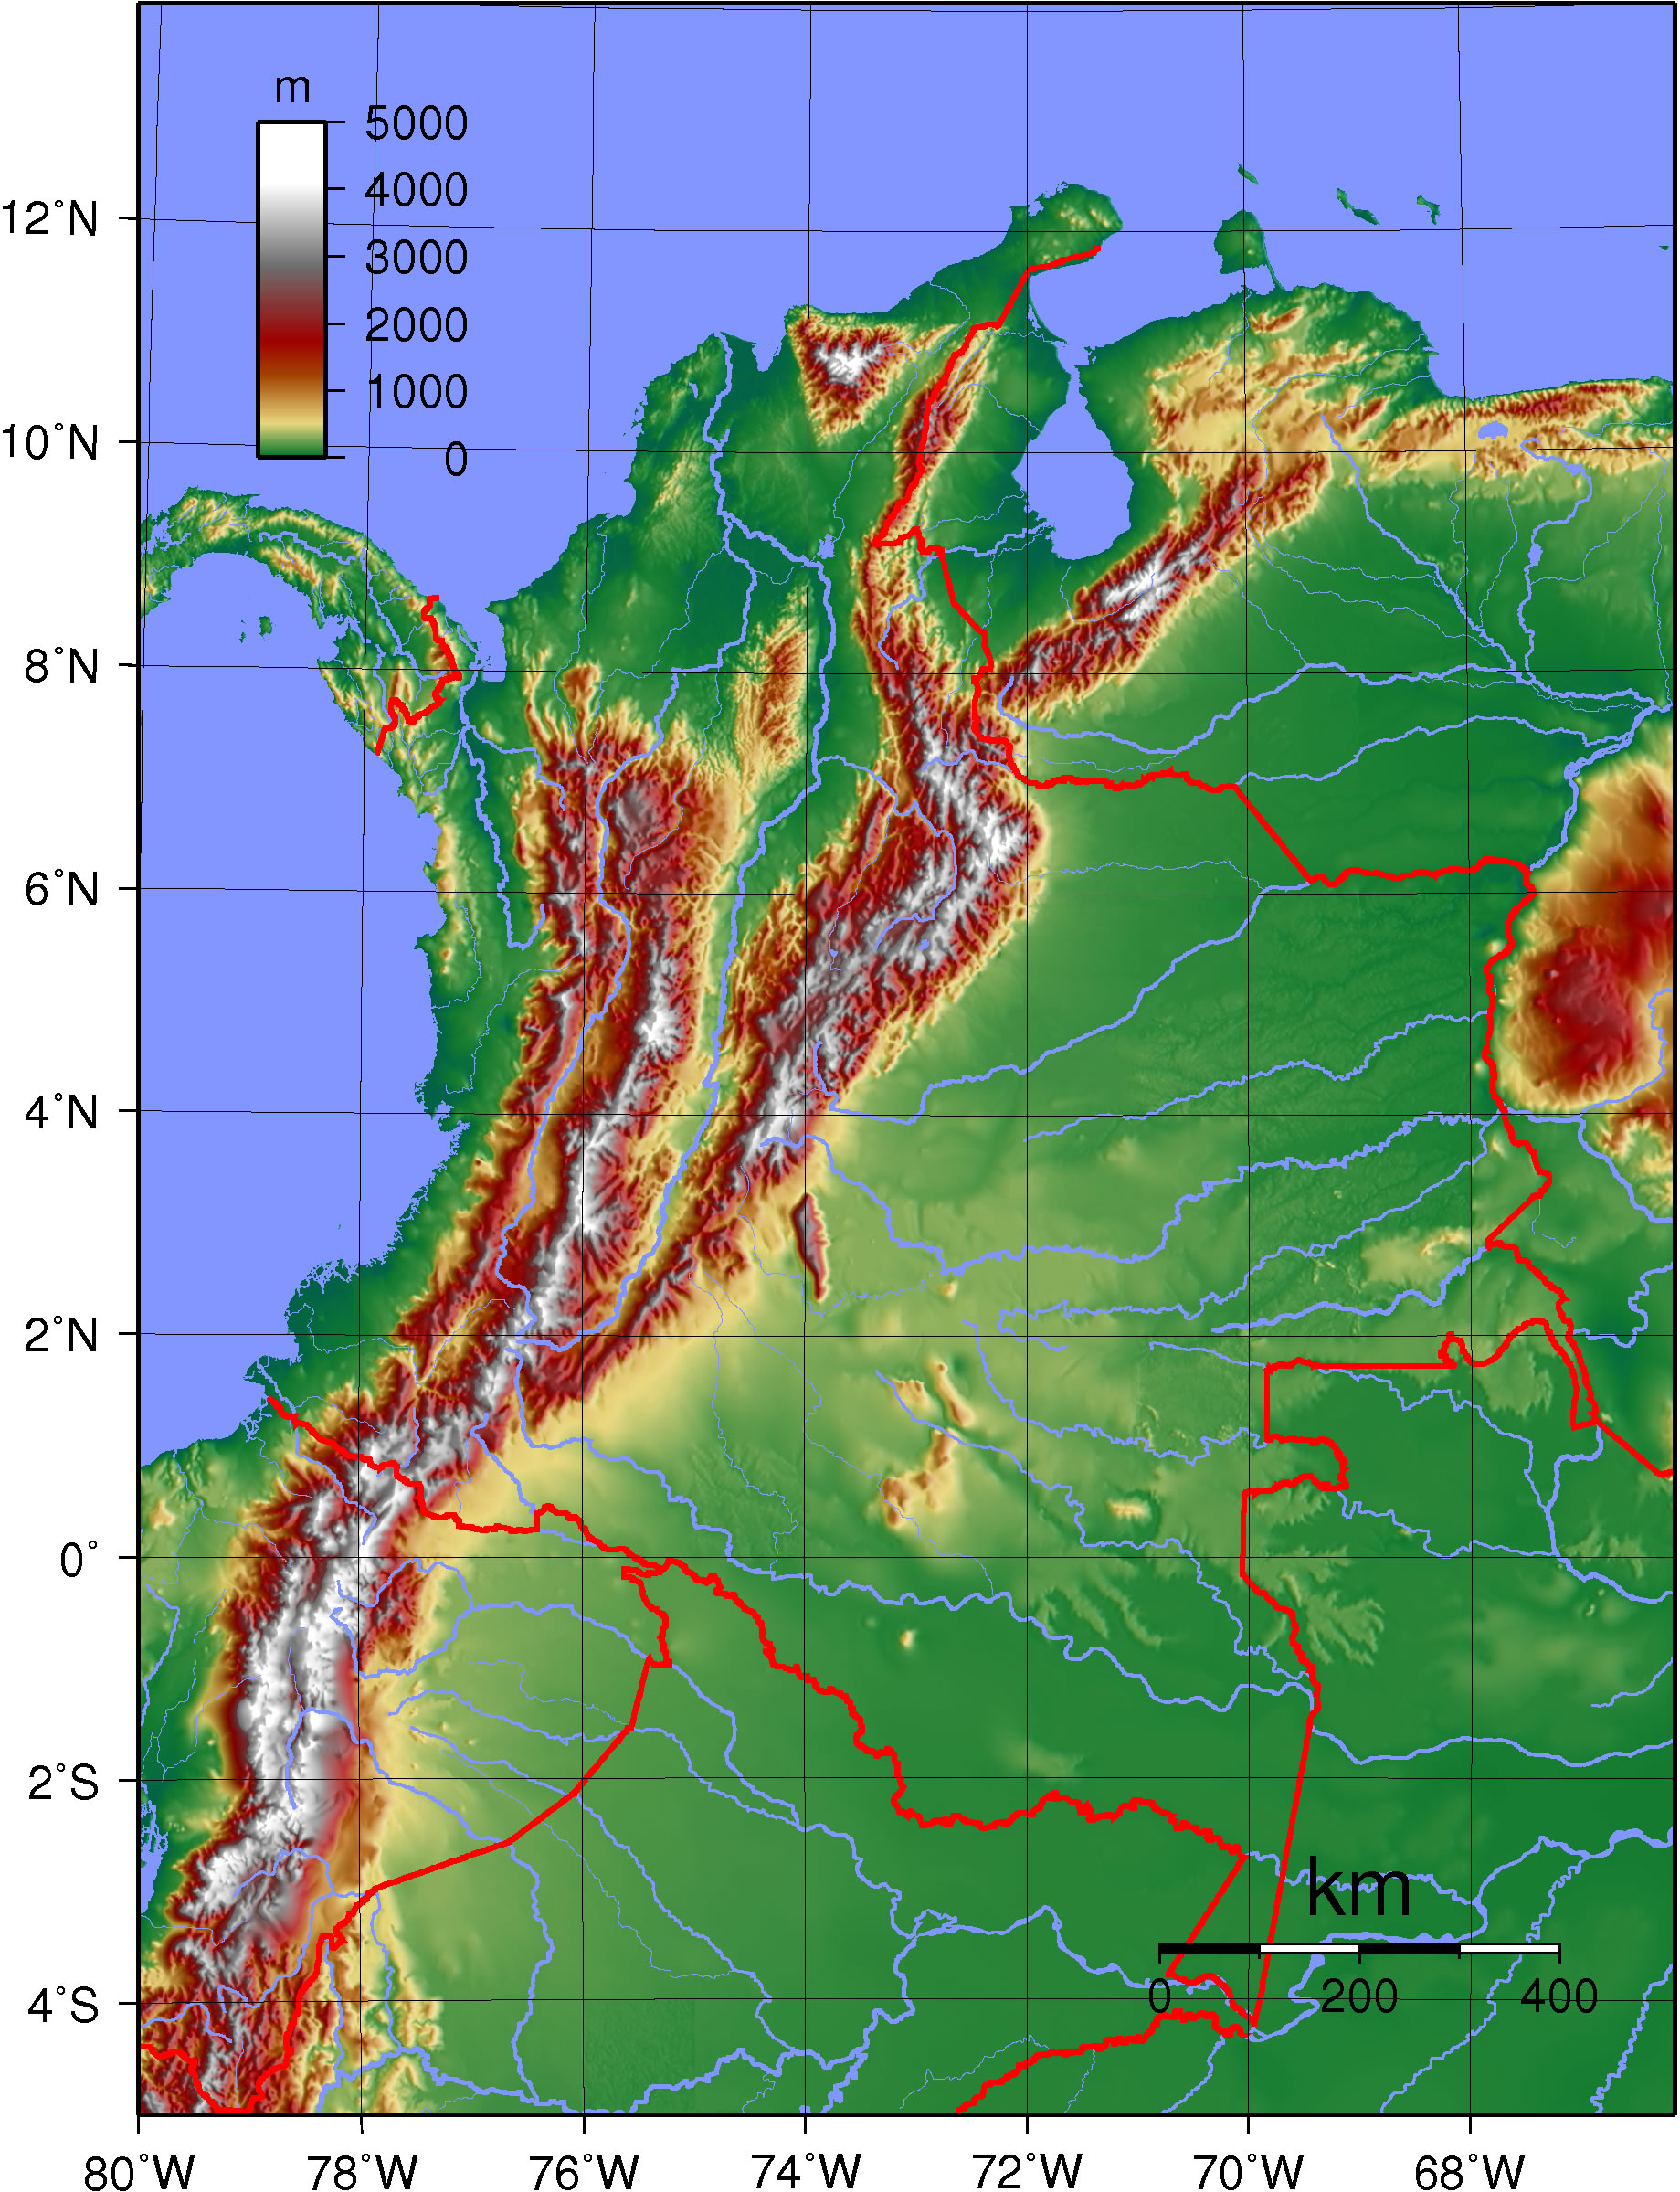 Mapa topográfico de Colombia 2007 - Tamaño completo